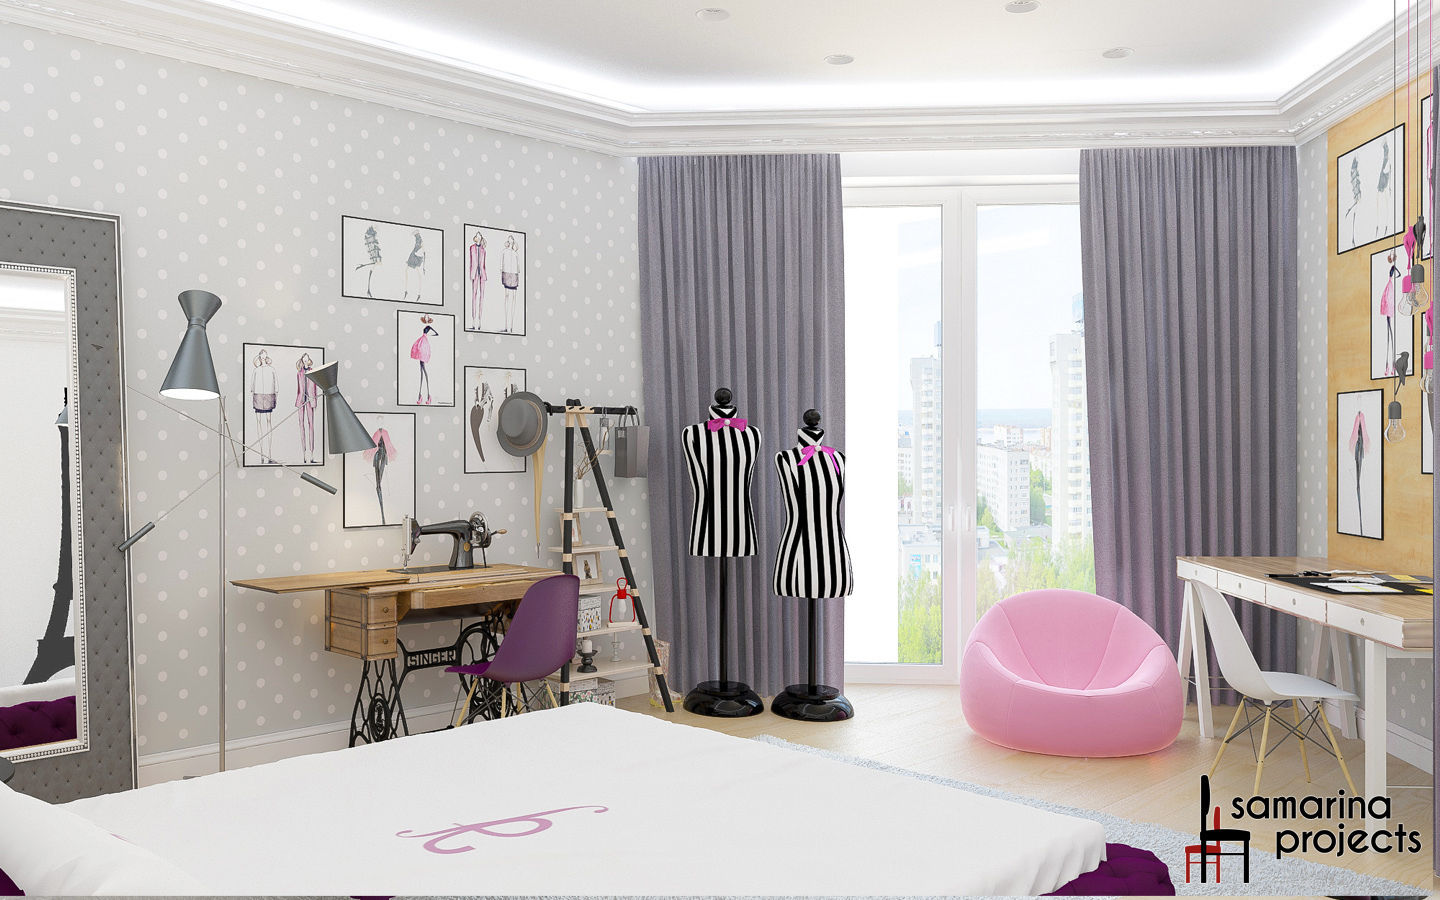 Дизайн квартиры "Геометрия цвета", Samarina projects Samarina projects Dormitorios infantiles de estilo minimalista